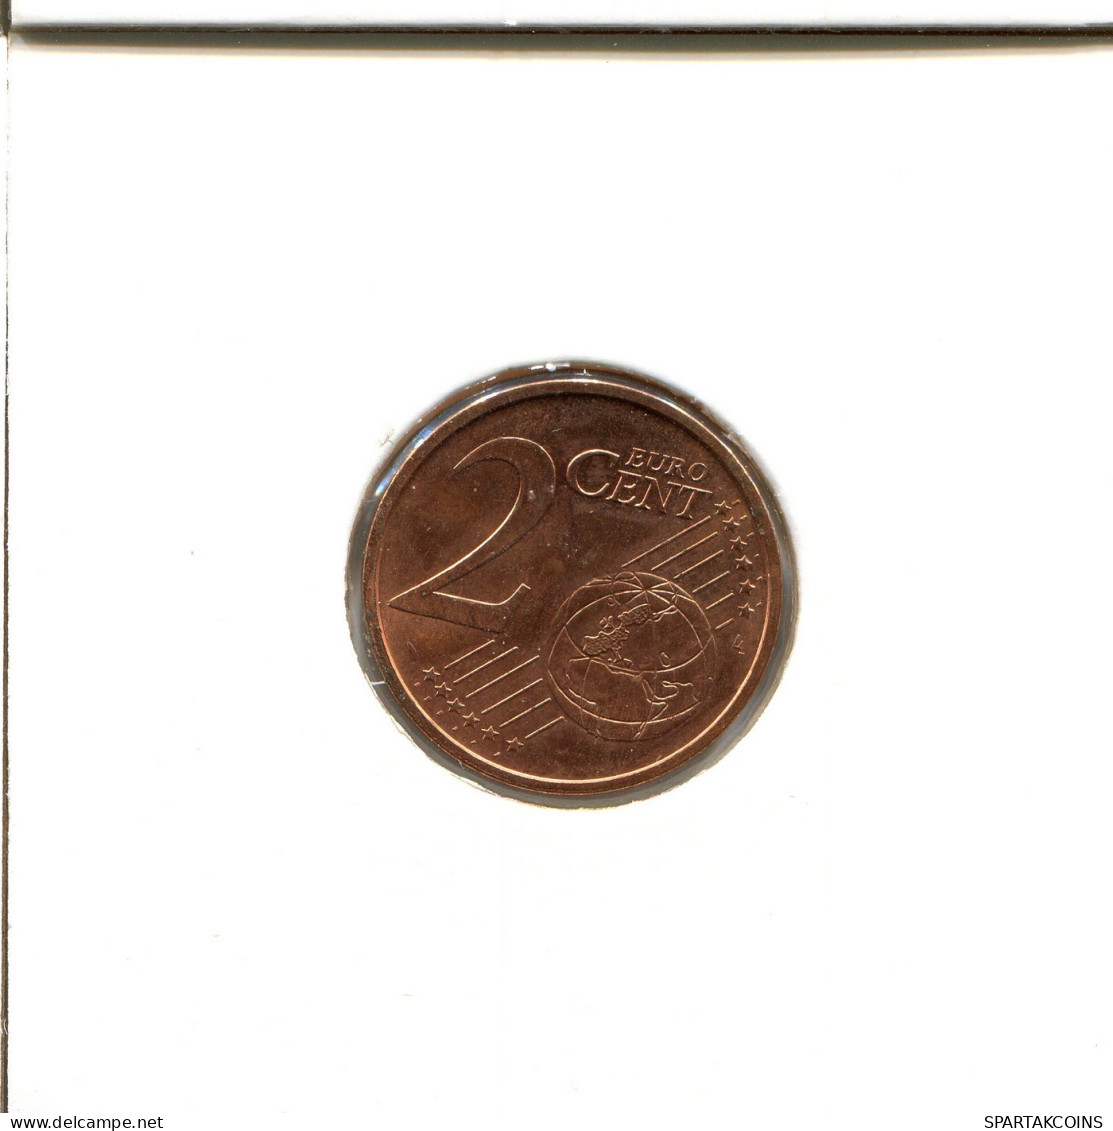 2 EURO CENTS 2013 SPAIN Coin #EU354.U.A - Spain